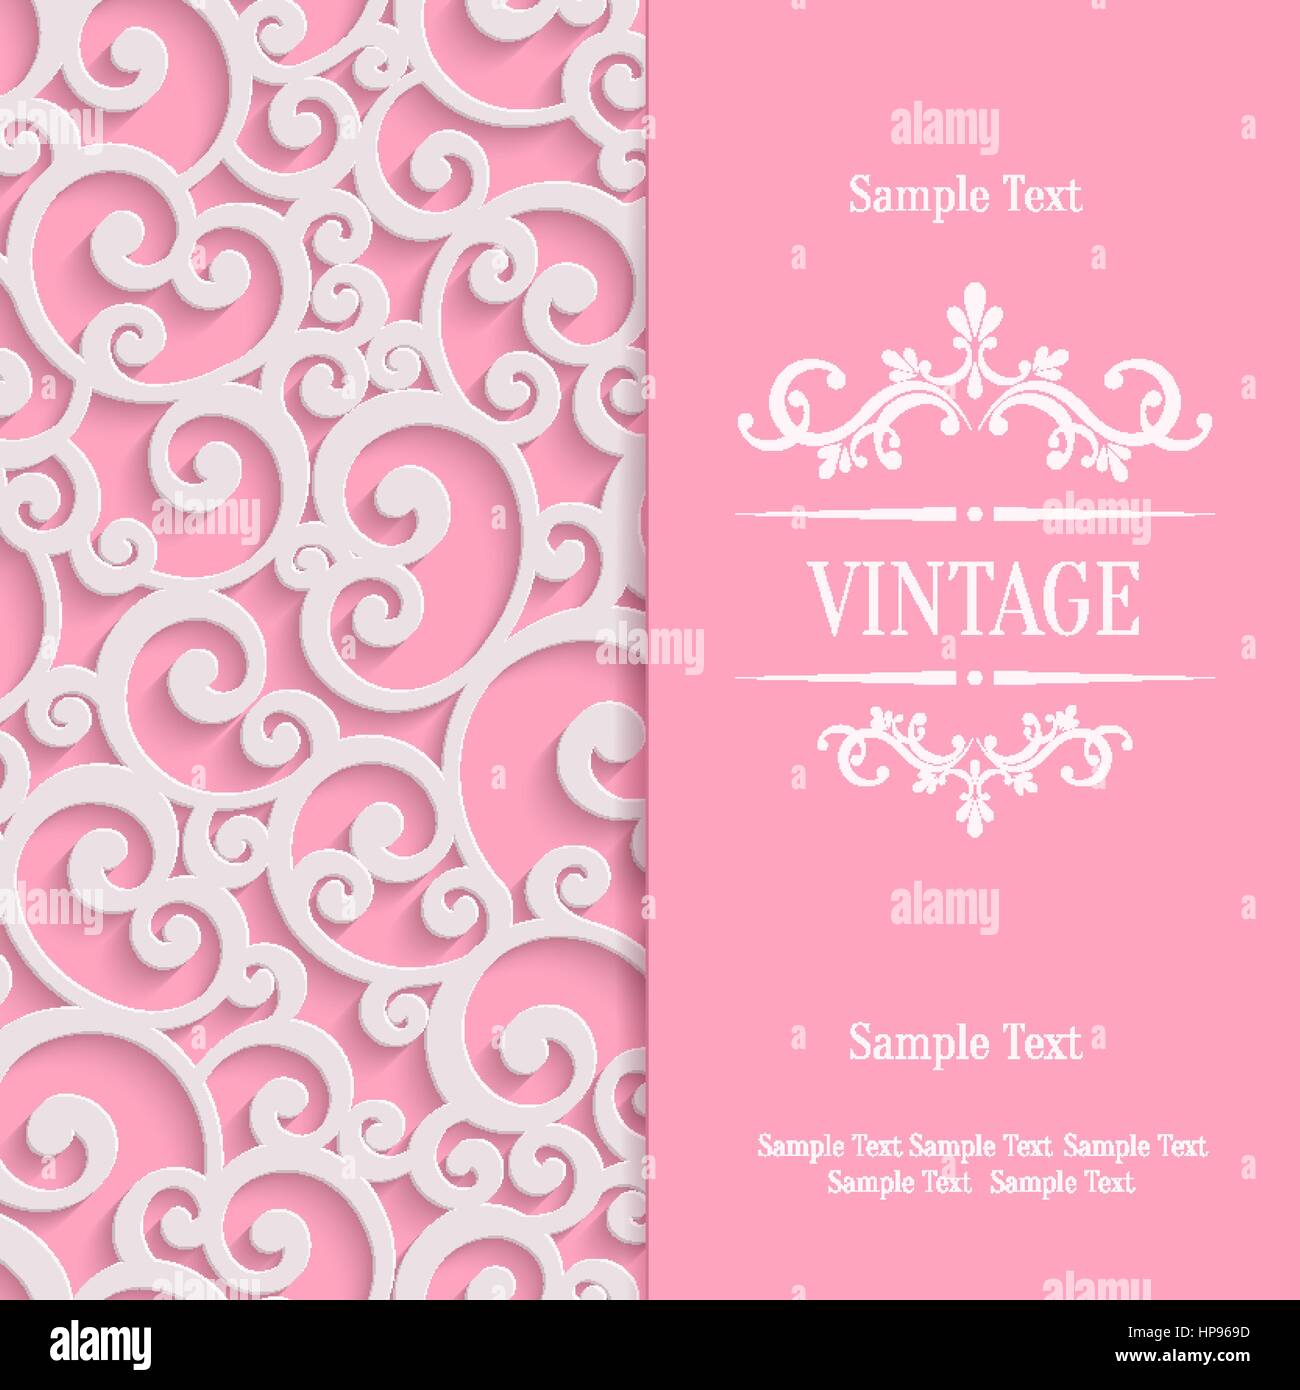 Rosa 3d Swirl Valentines Day Card con motivi floreali Curl Pattern, Invito template vettoriale sfondo Illustrazione Vettoriale